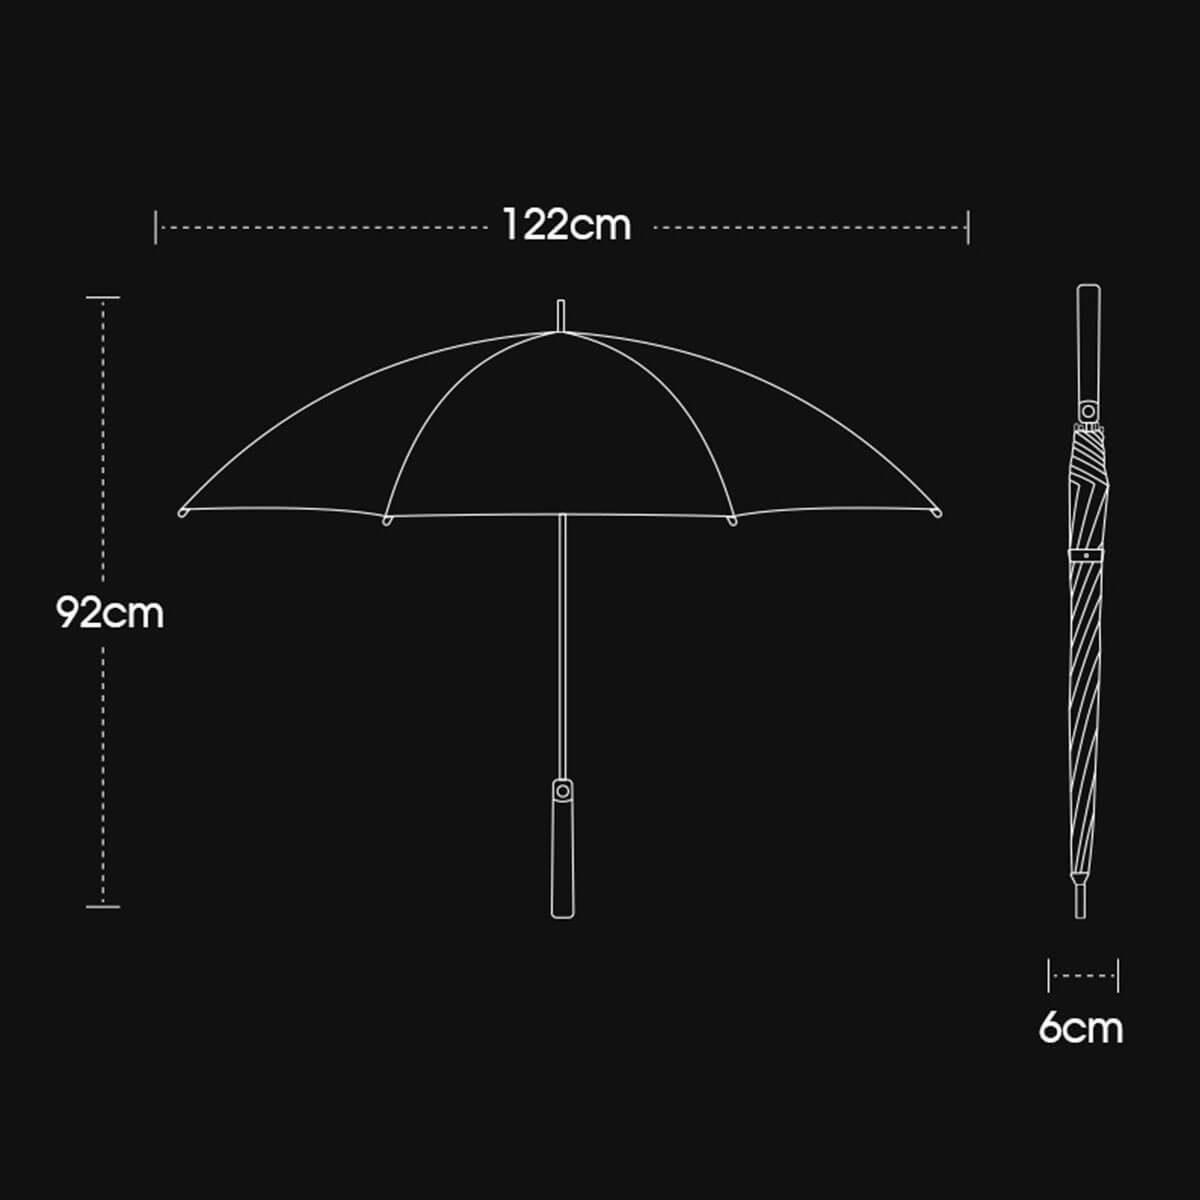 Magical Automatic Umbrella with Elegant Design